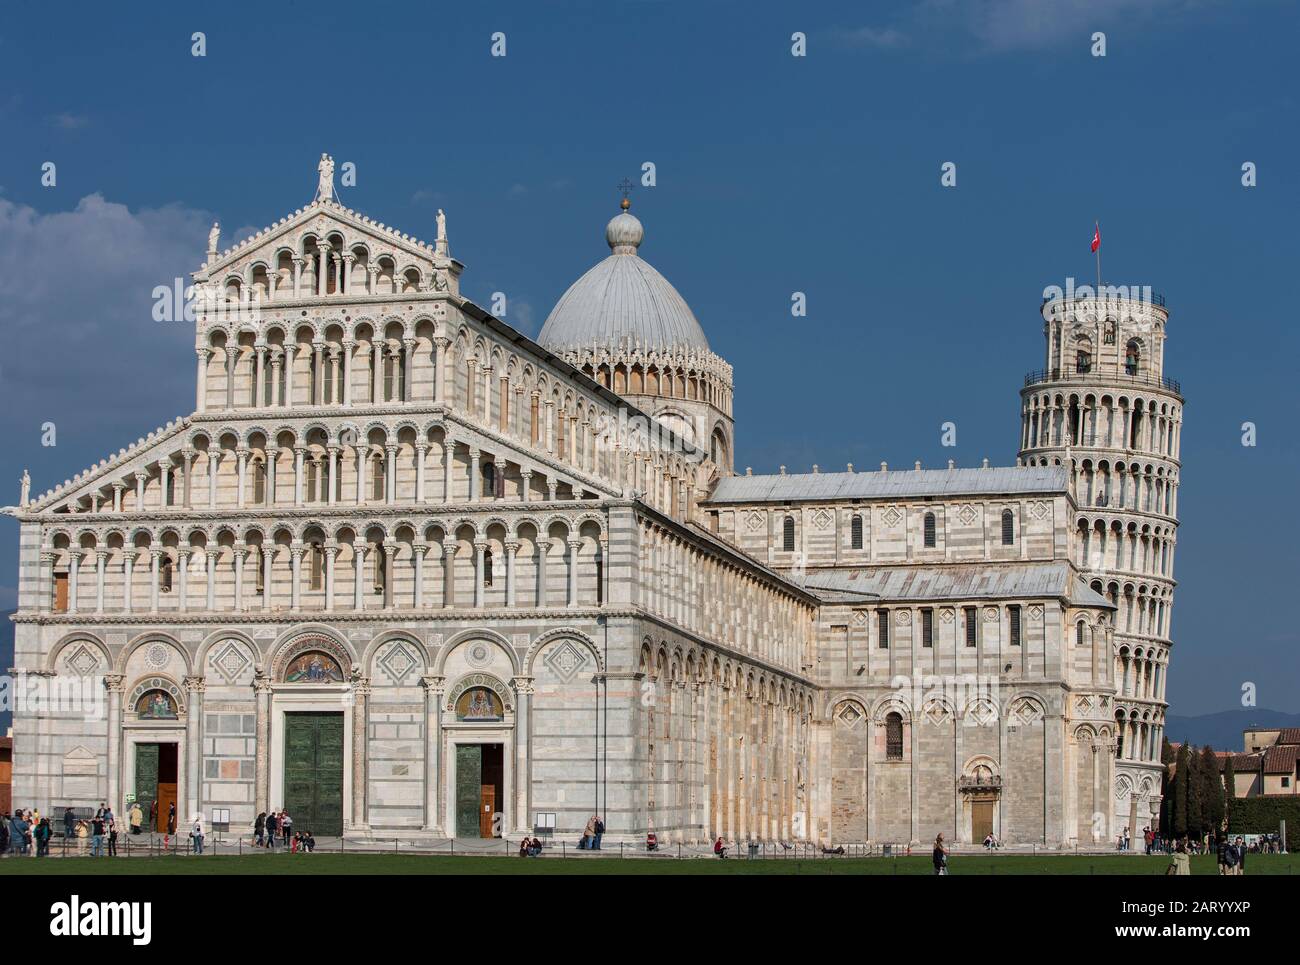 Schiefer Turm von Pisa und Piazza dei Miracoli in der Toskana, Italien Stockfoto